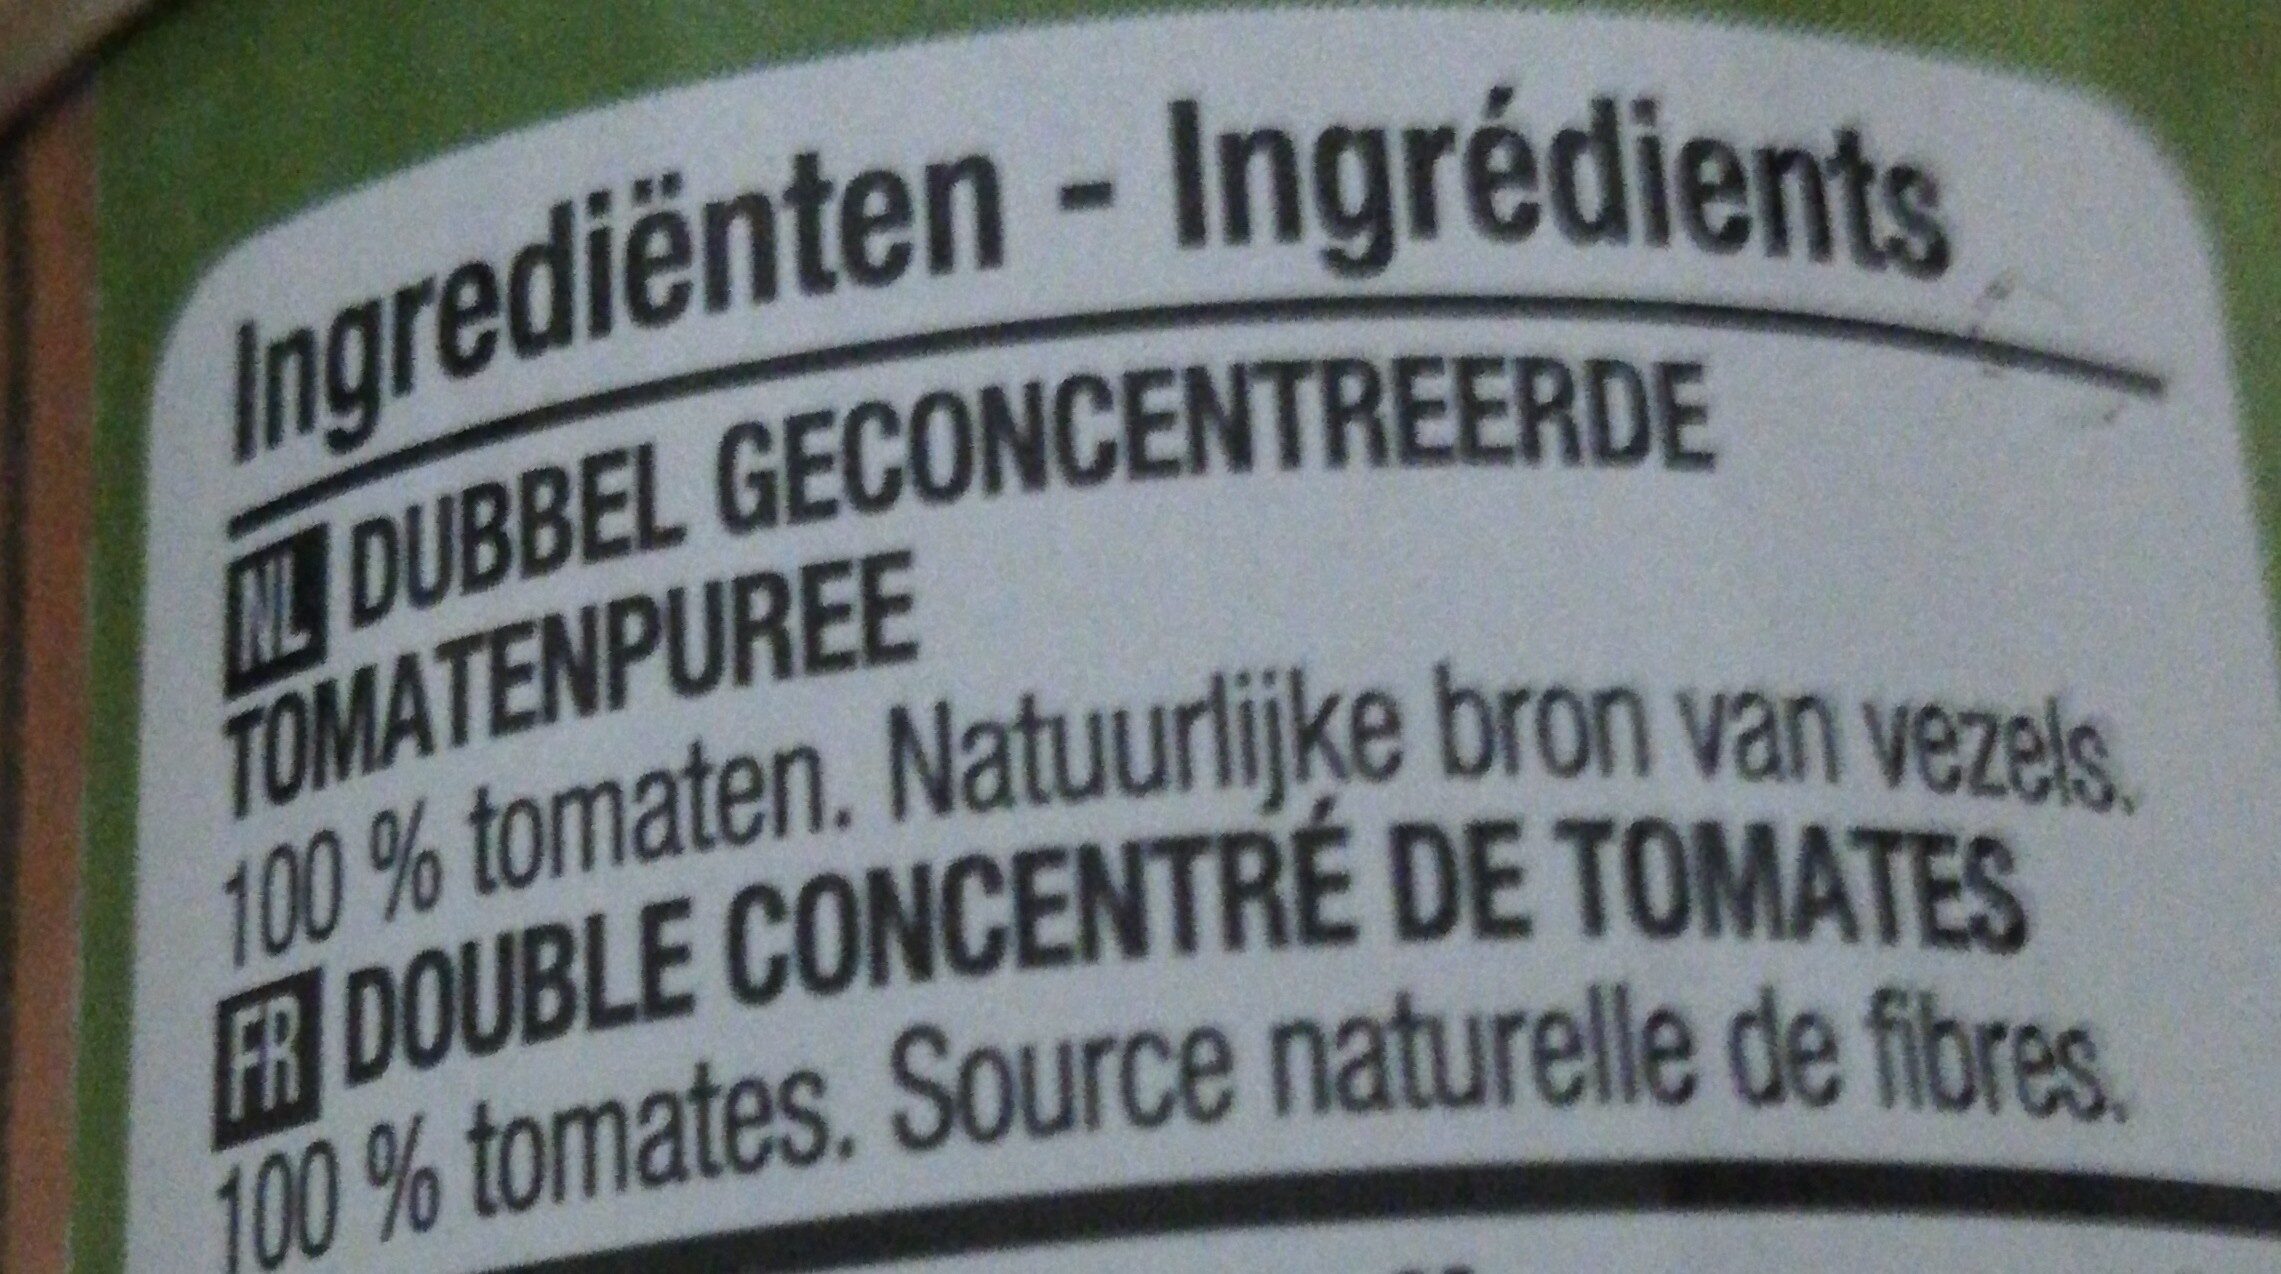 Dubbel geconcentreerde tomatenpuree - Ingredients - nl